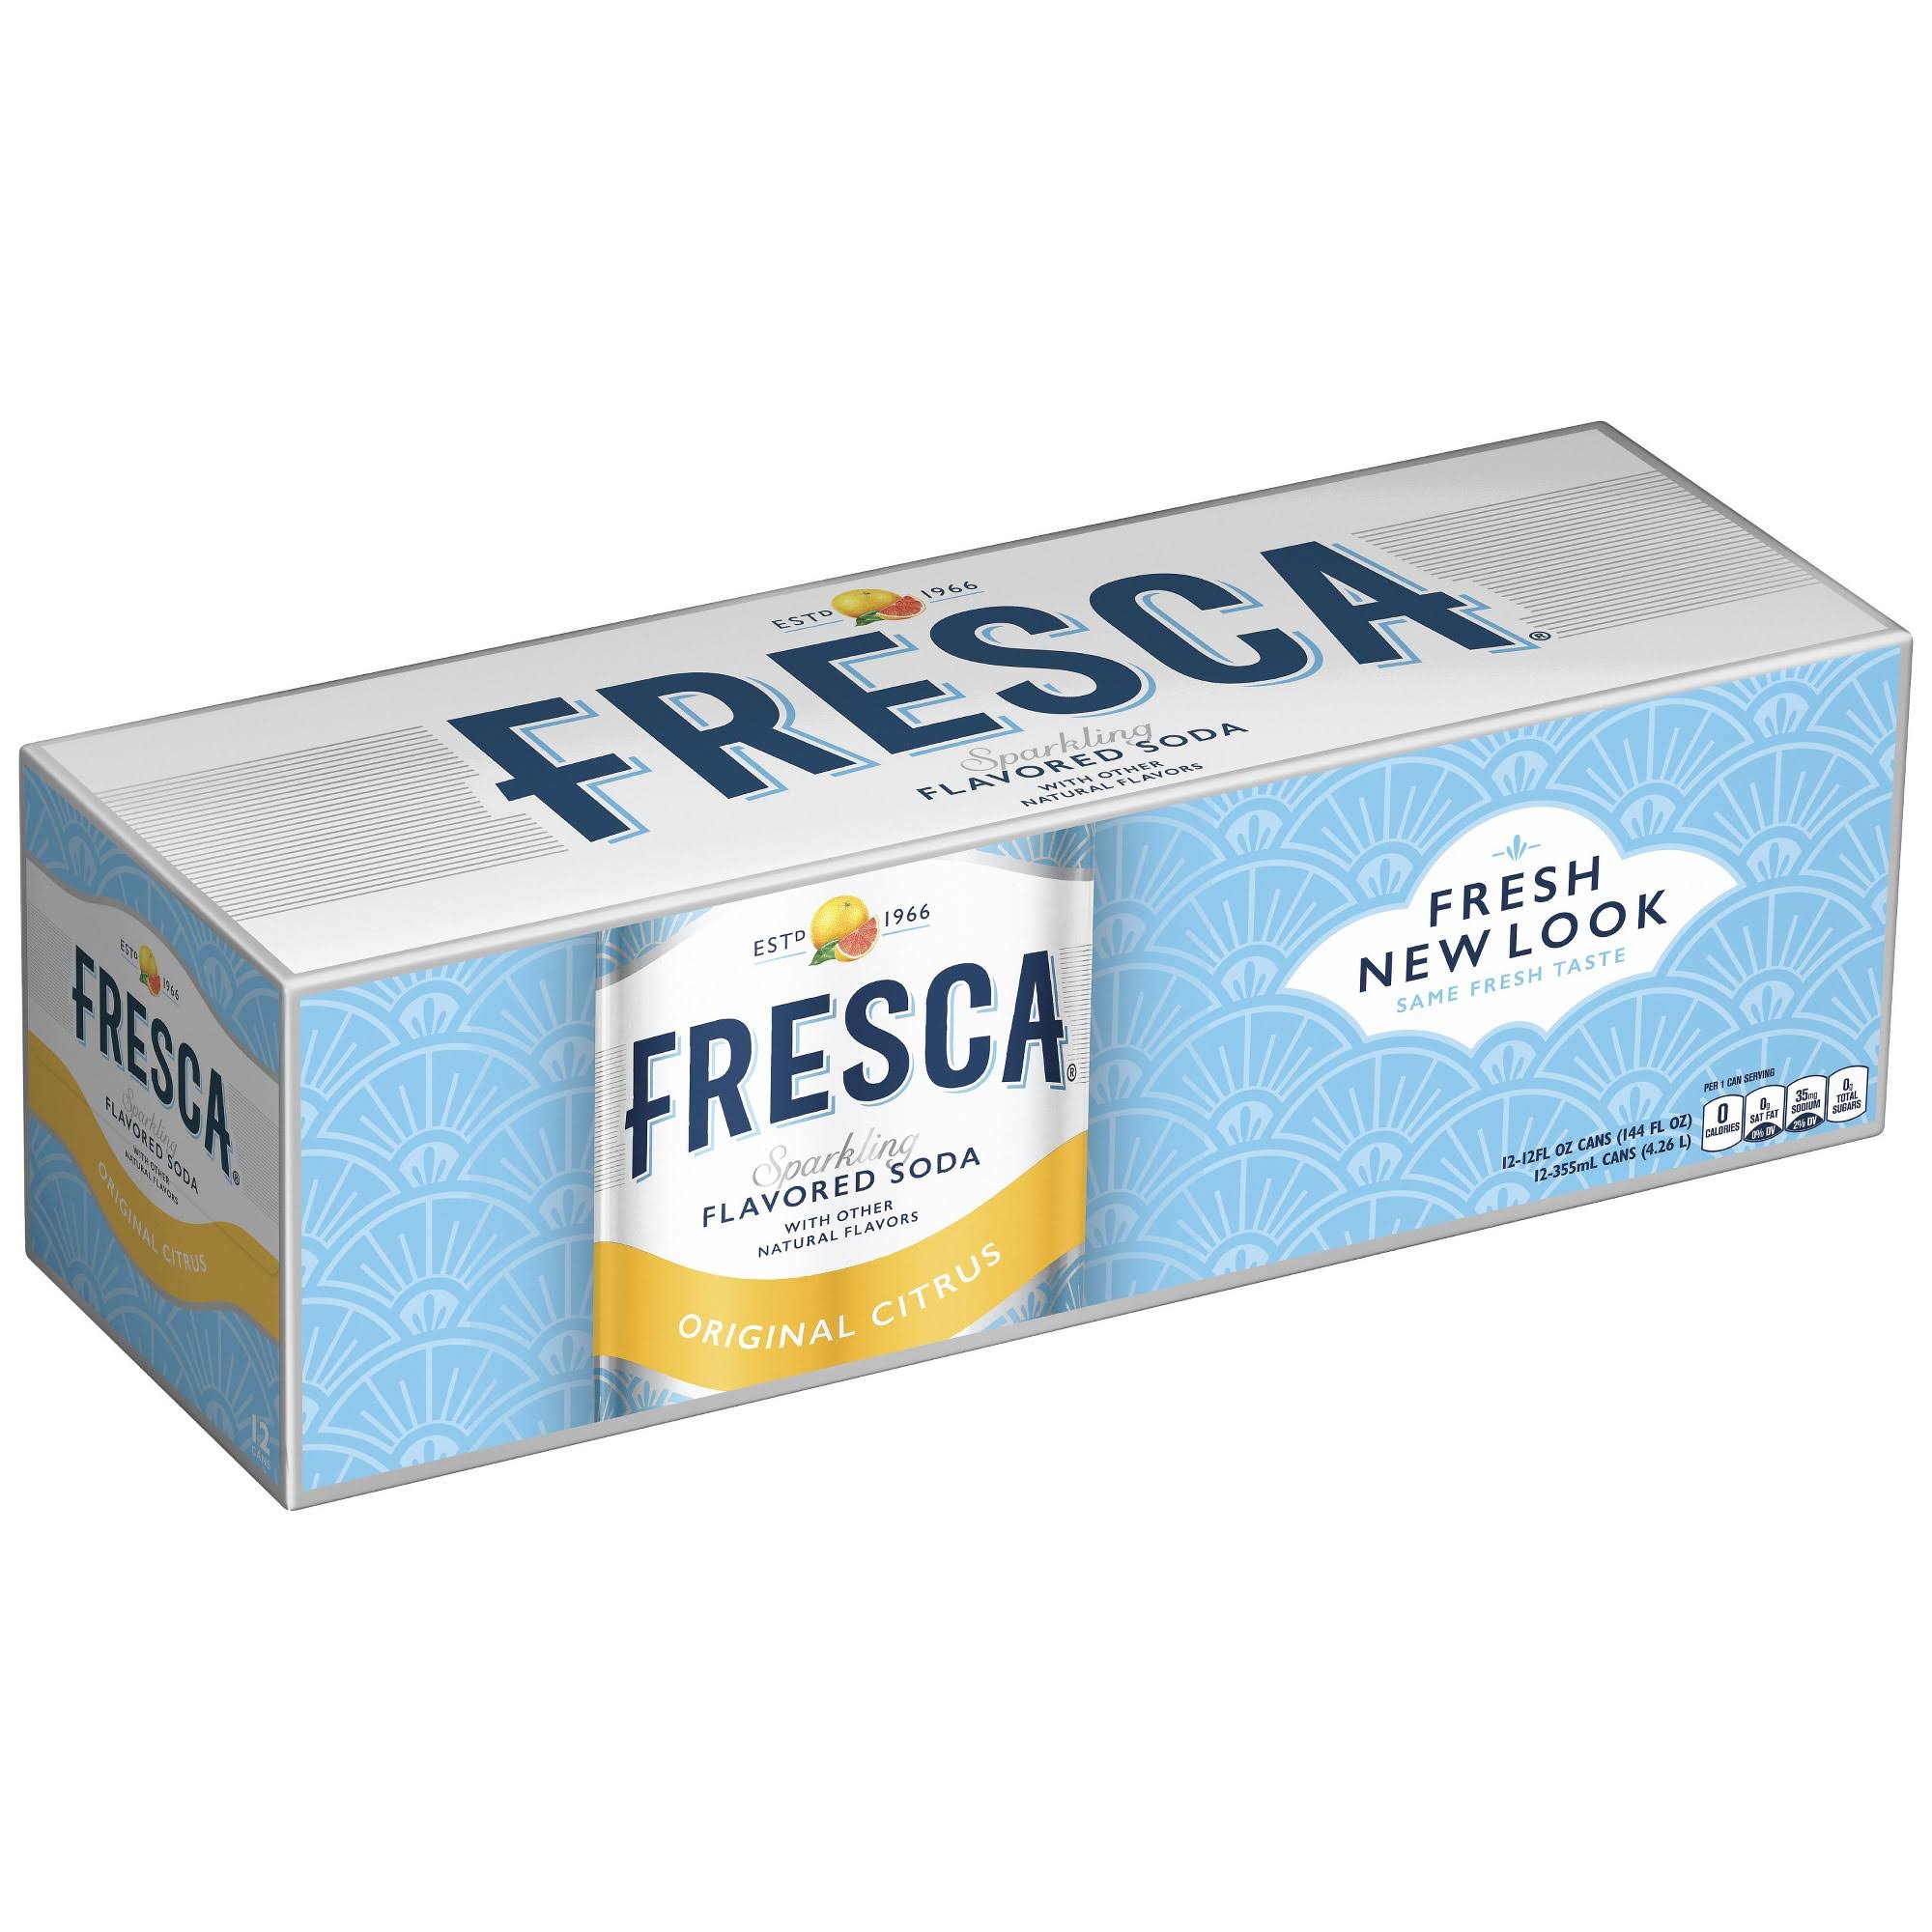 Fresca Sparkling Flavored Soda - Original Citrus, 12oz, 24 Pack